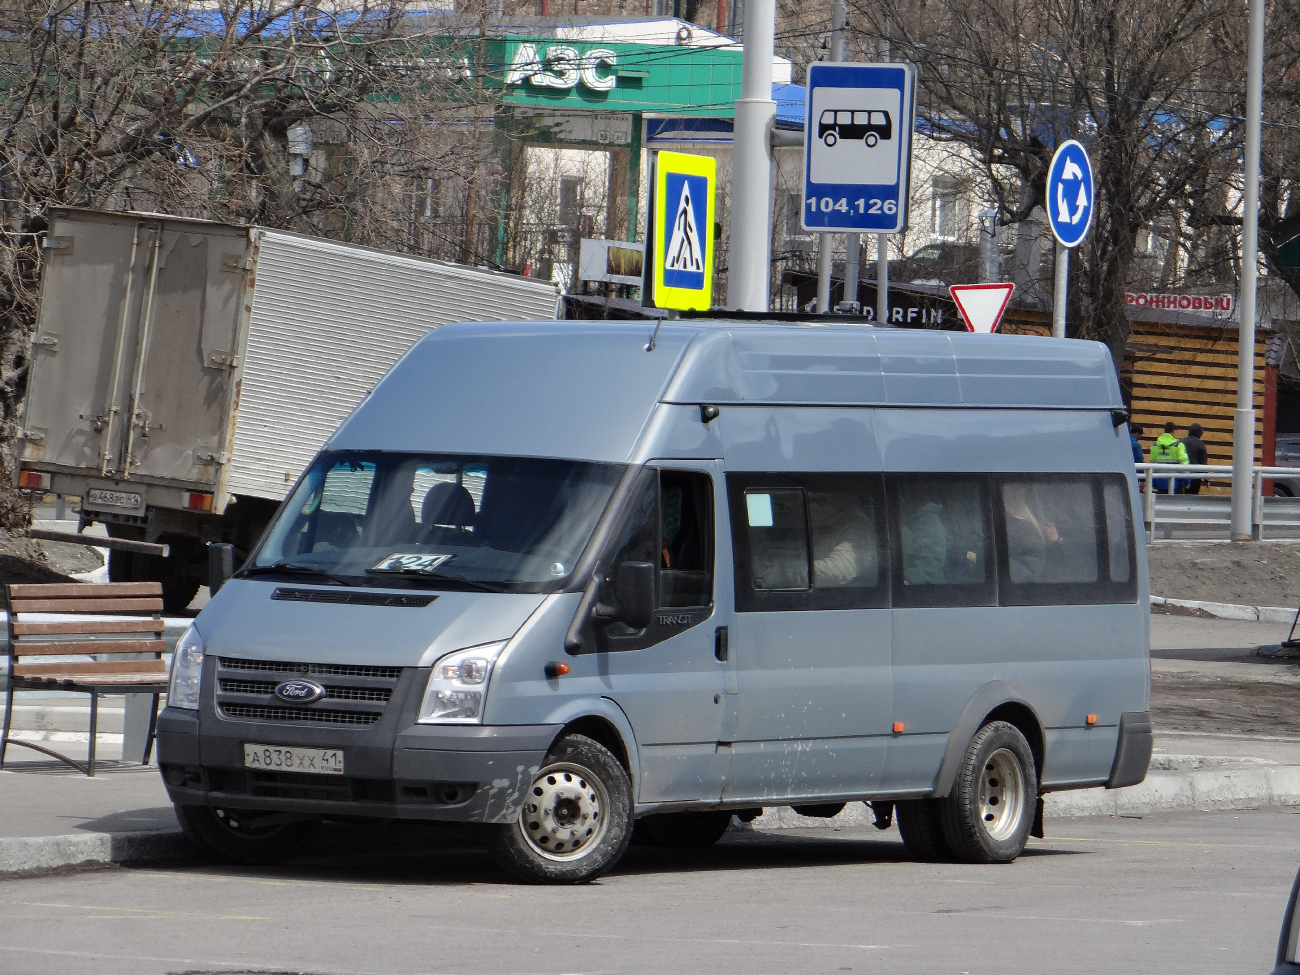 Petropavlovsk-Kamchatskiy, Nizhegorodets-222709 (Ford Transit) nr. А 838 ХХ 41